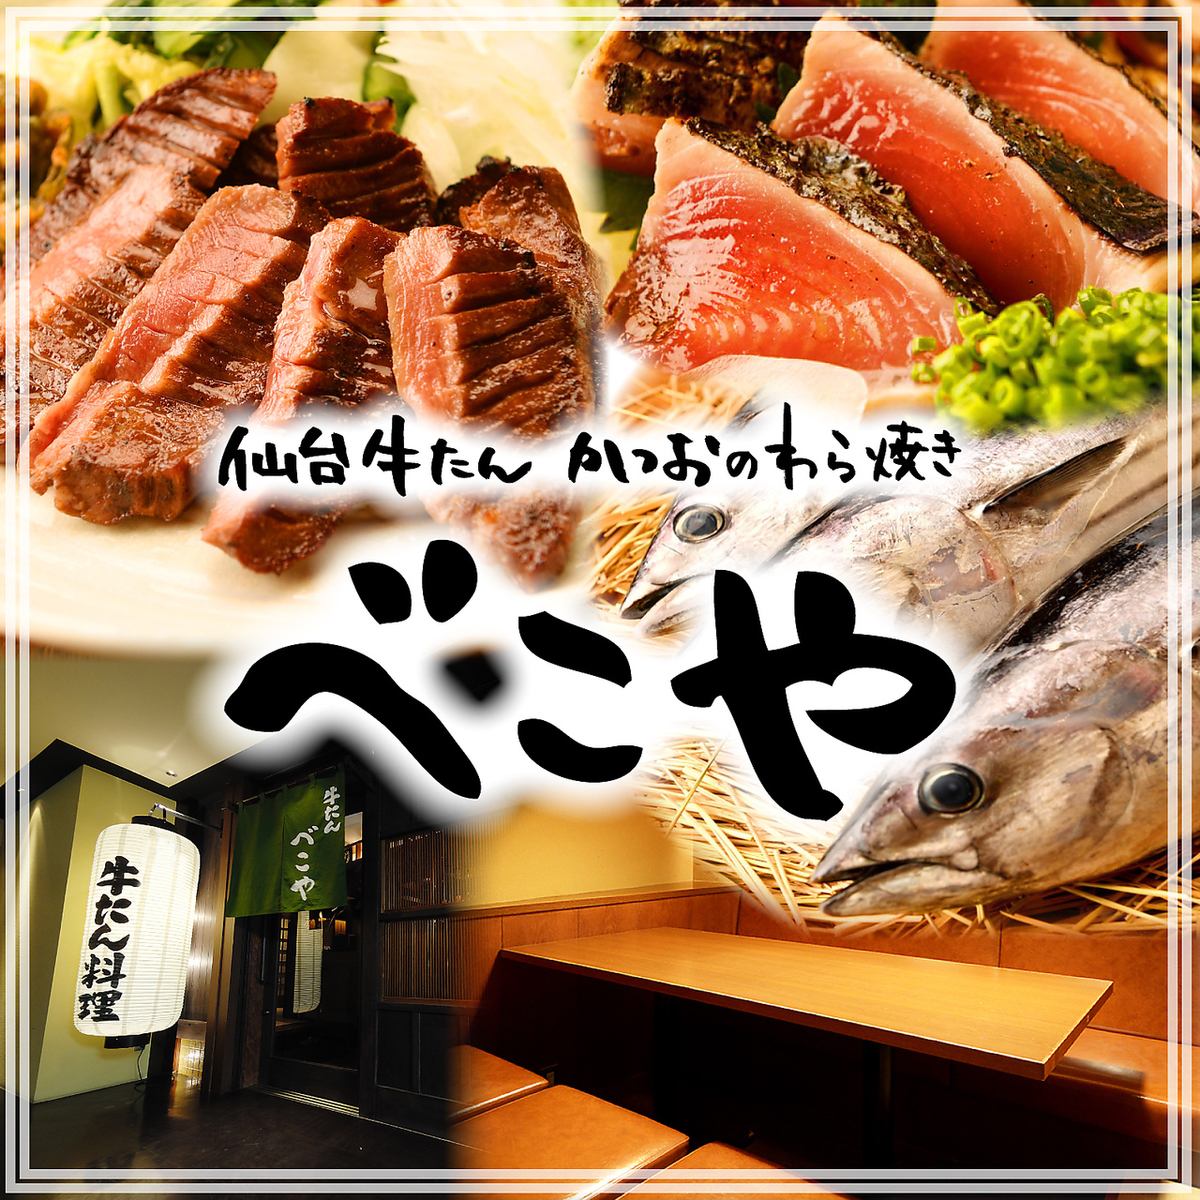 欢迎会和送别会的预约现已开始！提供牛舌料理、草烤鲣鱼、时令日本料理。